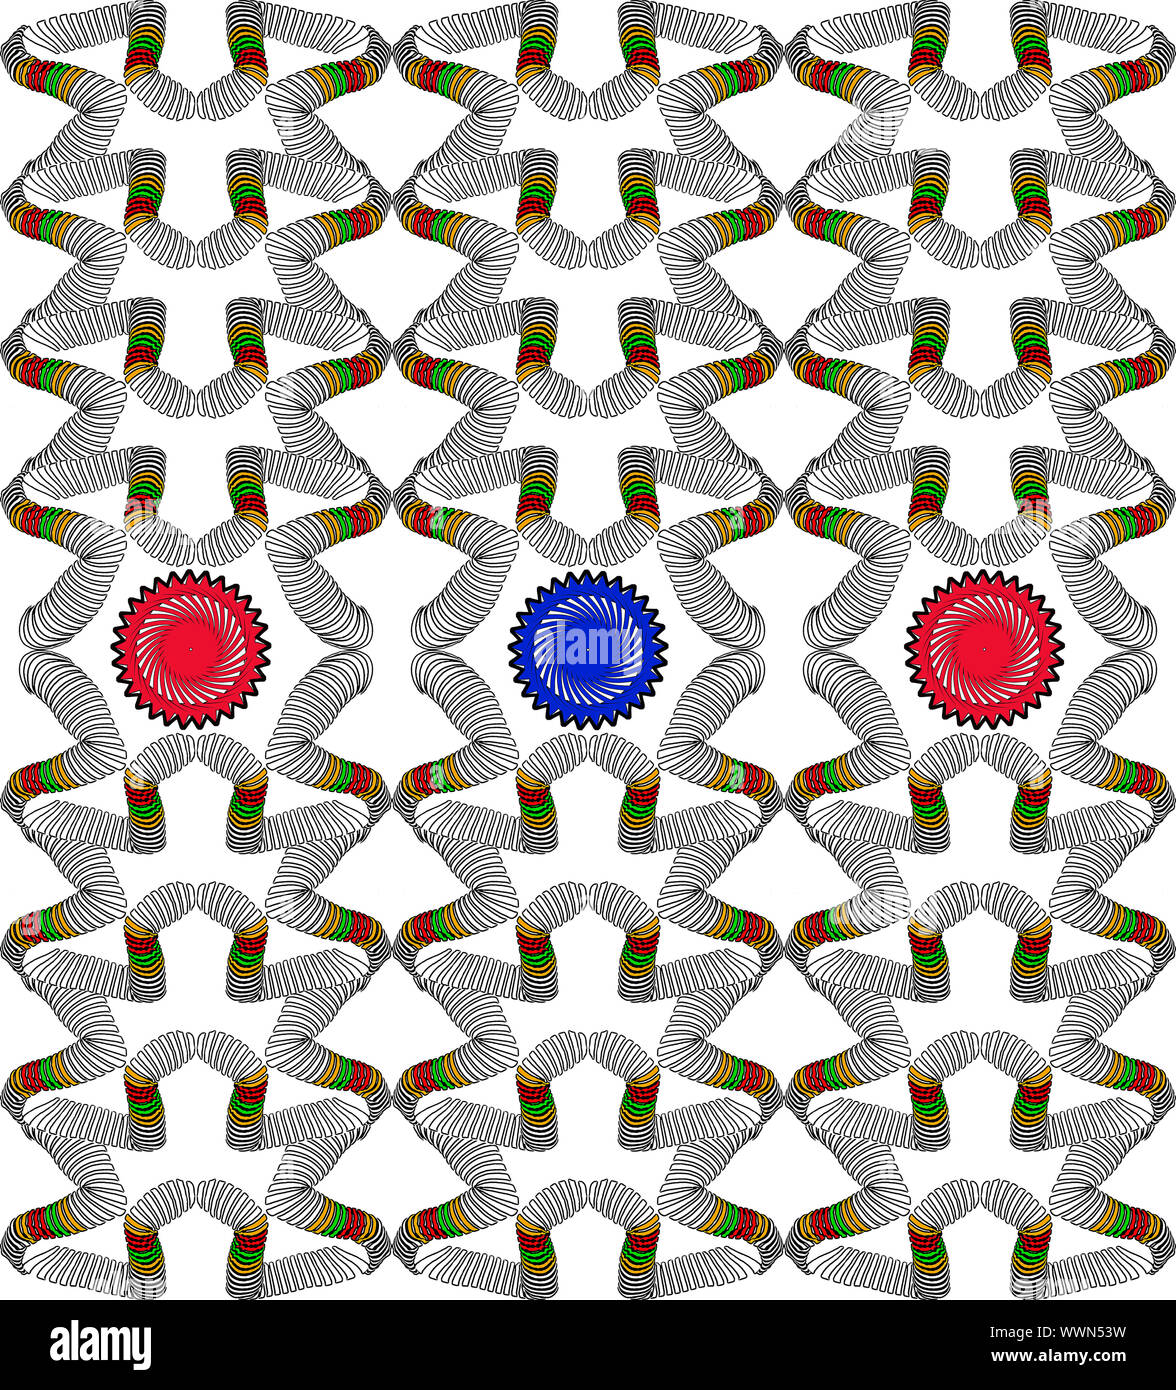 Parte de una imagen digital que se ha repetido, combinados y dan puntos adicionales de color para producir una trama de grupo Foto de stock